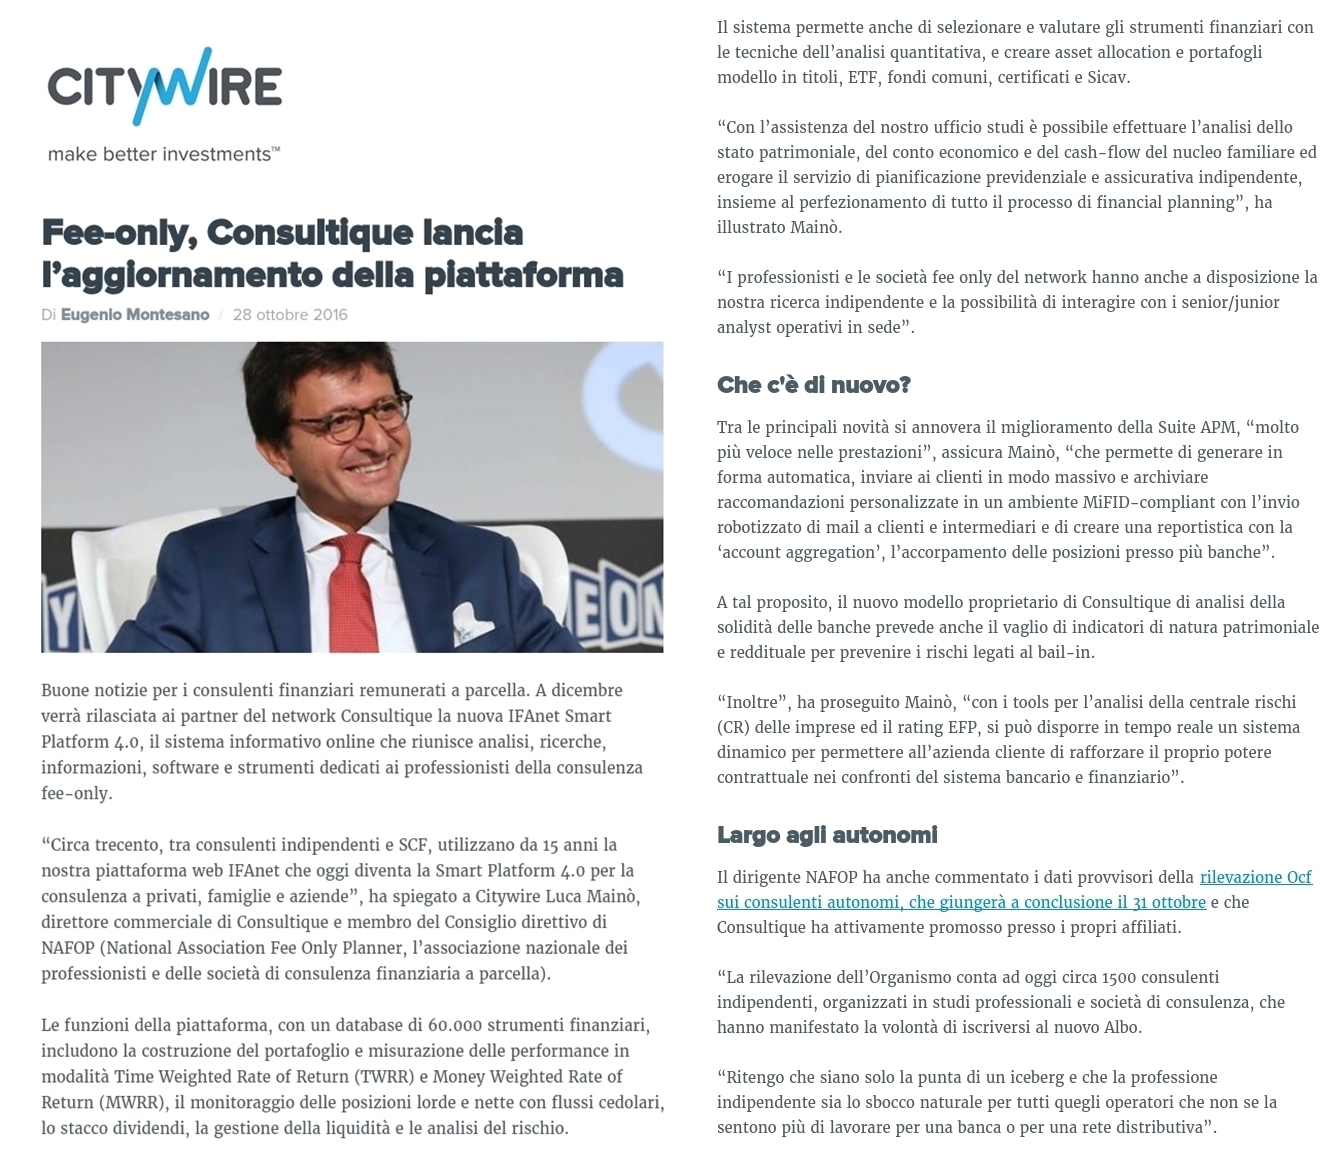 Citywire: Fee-Only, Consultique lancia l'aggiornamento della piattaforma